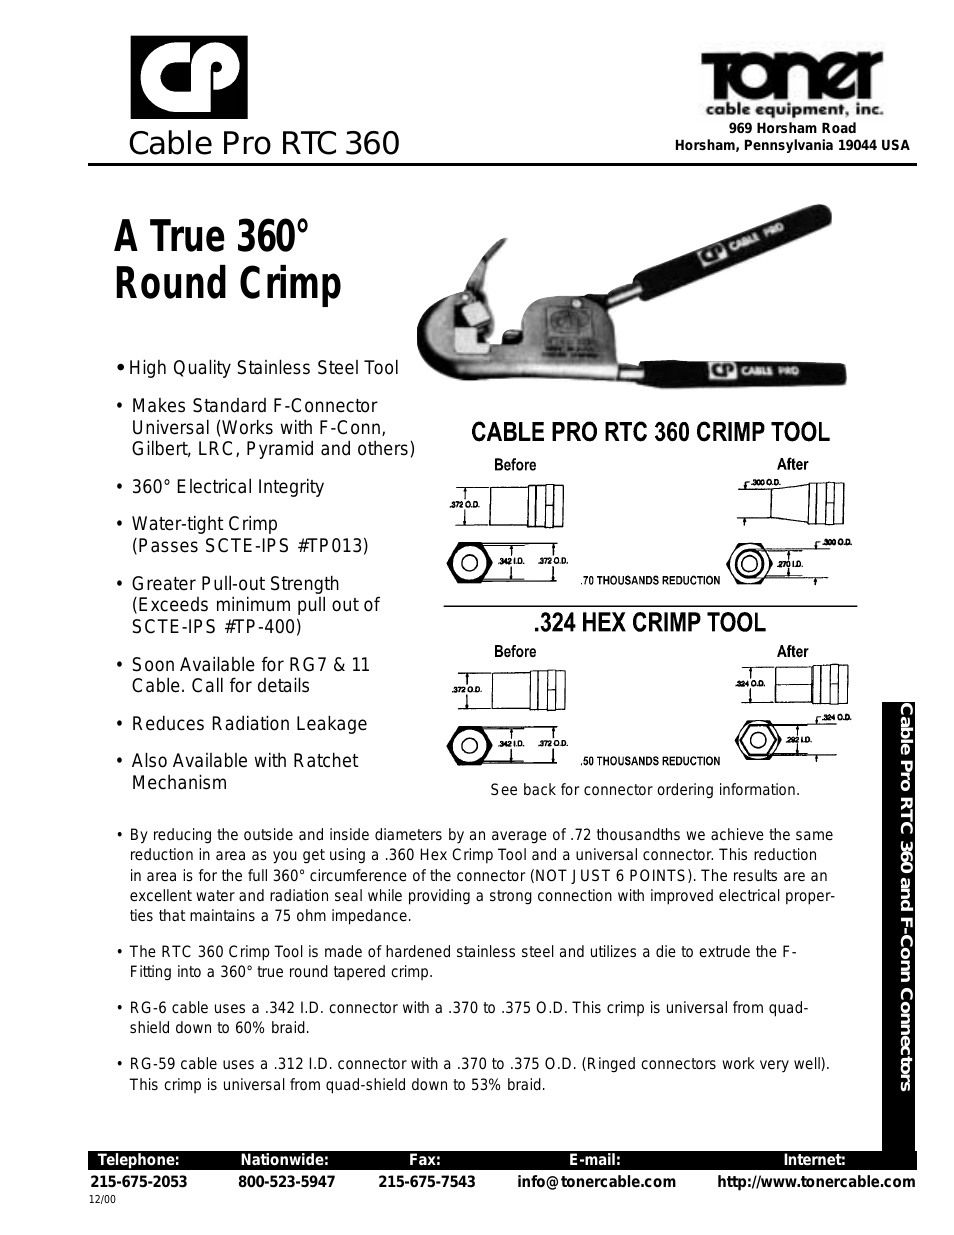 RTC 360 Cable Pro RTC 360 Crimp Tool